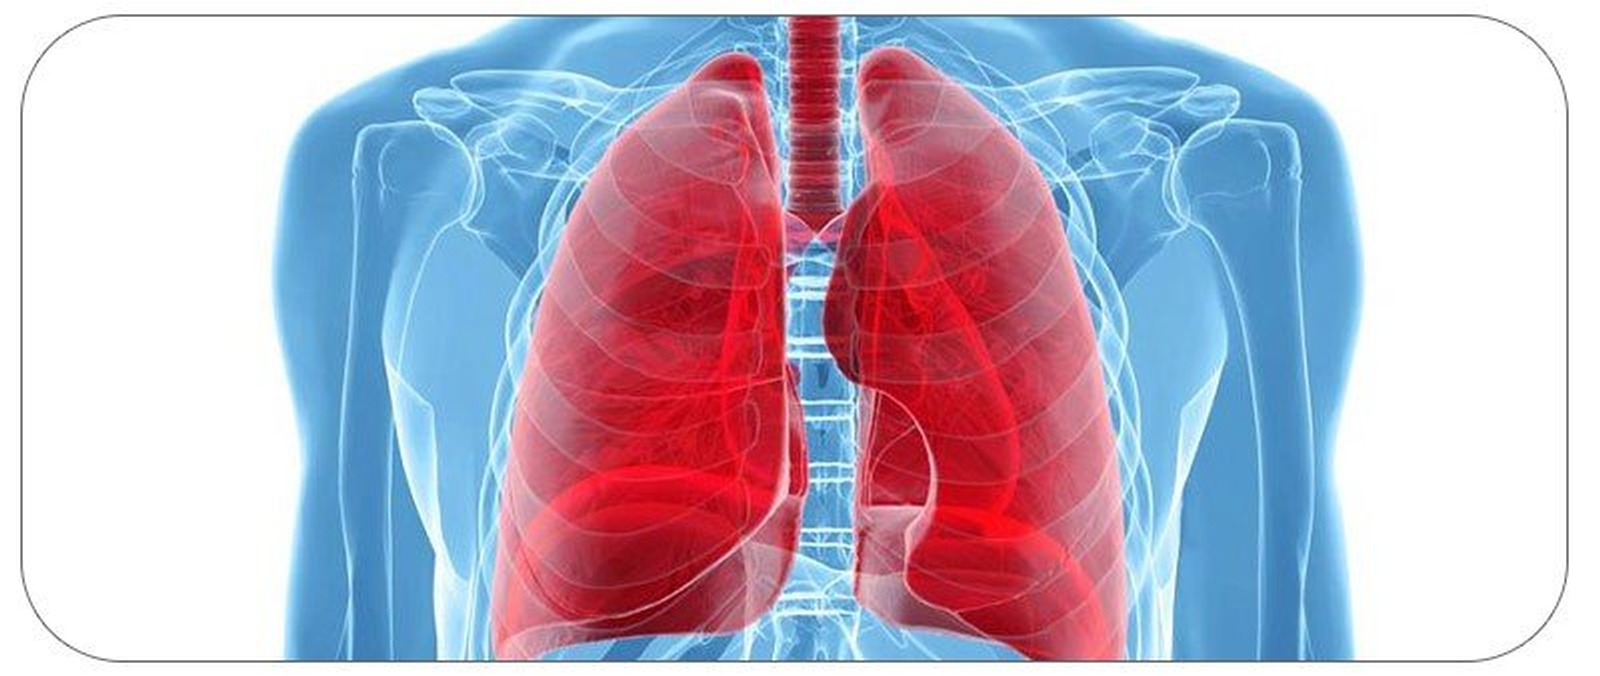 باروترومای ریه چیست؟